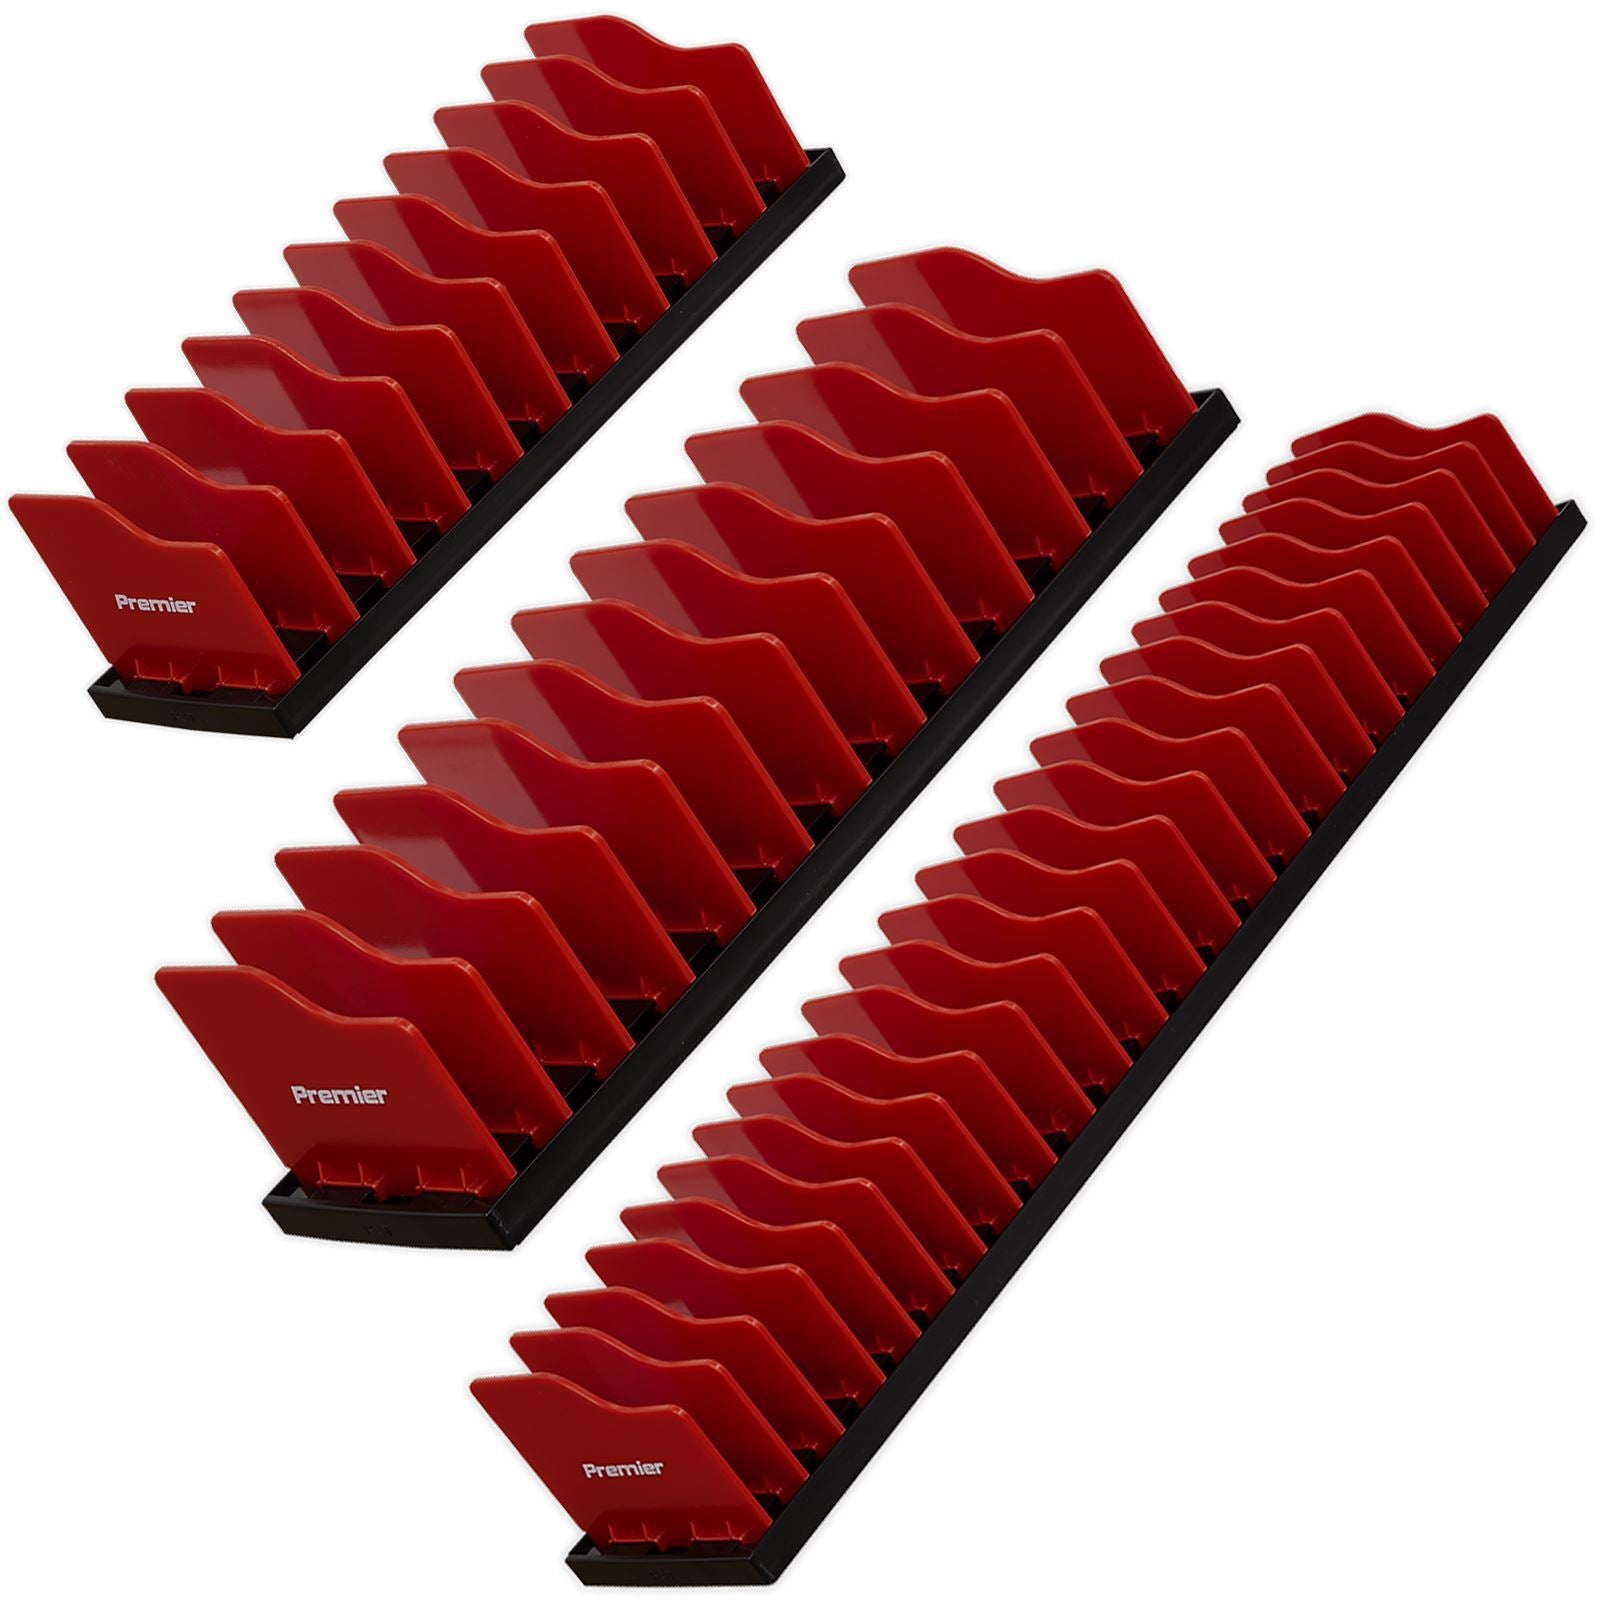 Sealey Premier Pliers Storage Racks with Adjustable Dividers